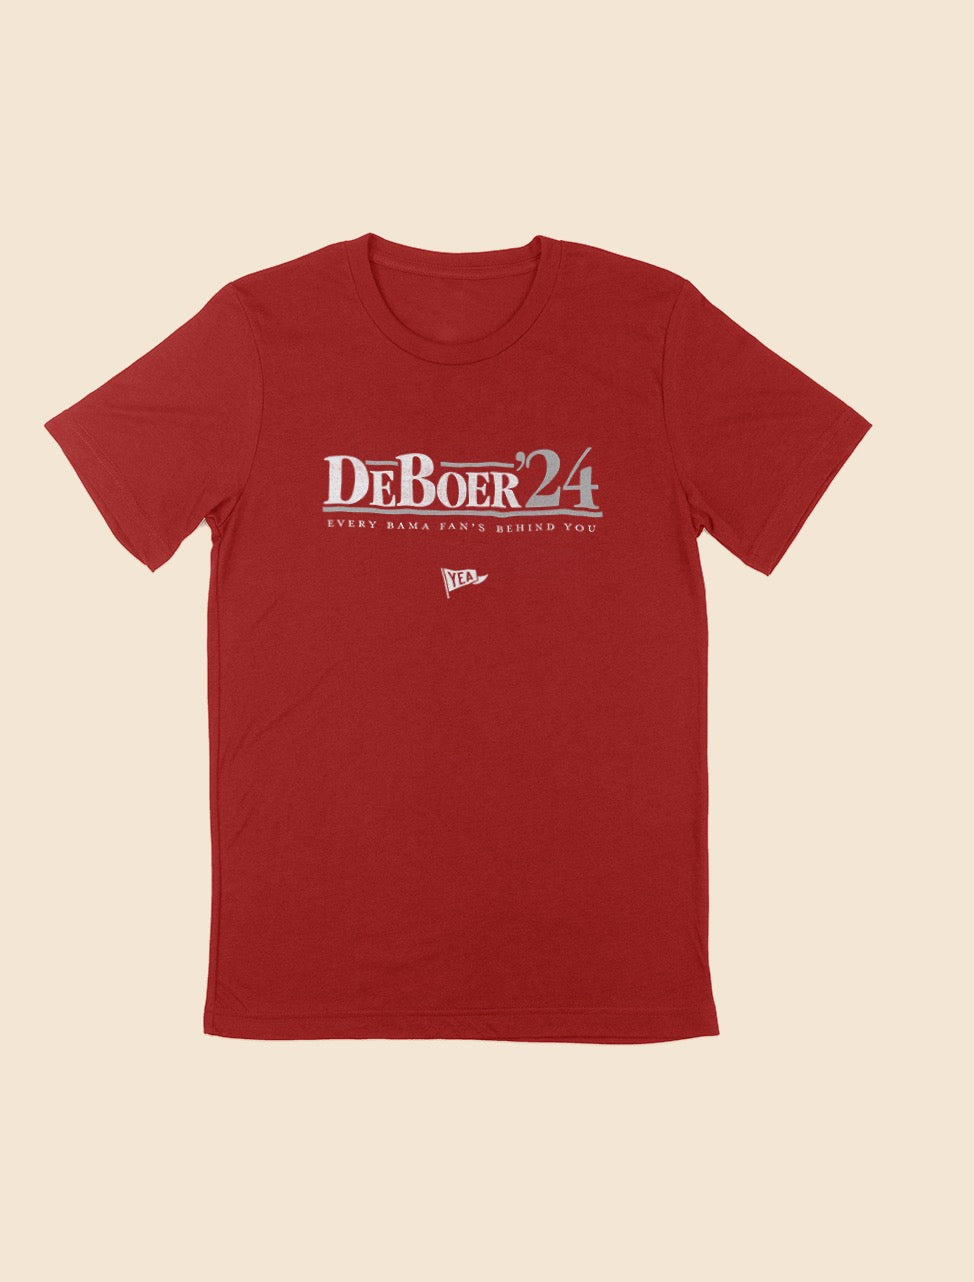 DeBoer in '24 T-Shirt